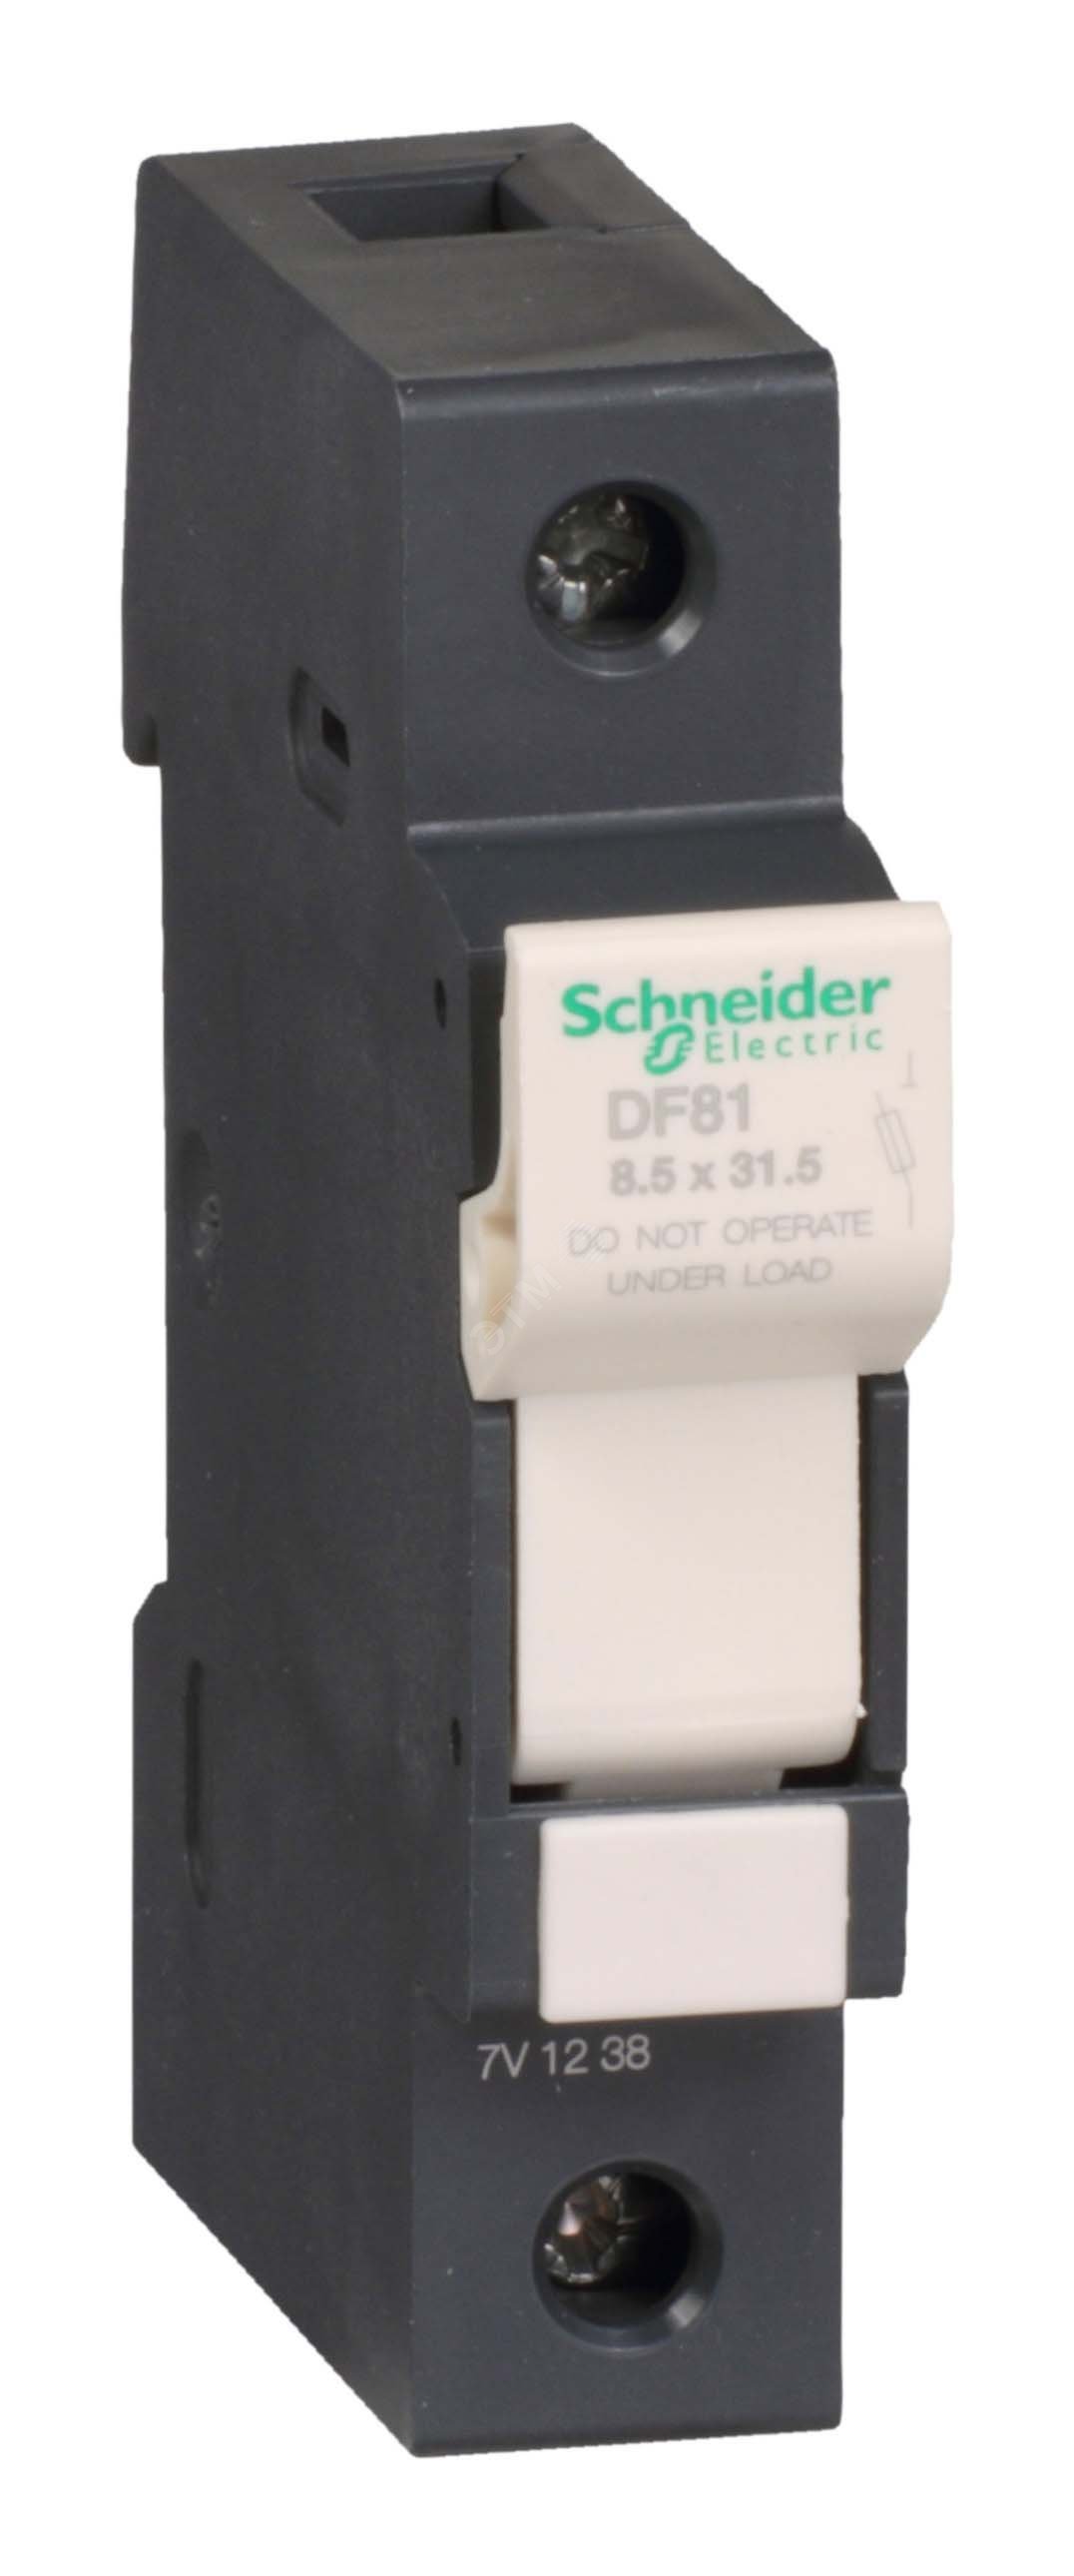 Разъединитель-предохранитель 25A 1п 8.5х31.5 DF81 Schneider Electric - превью